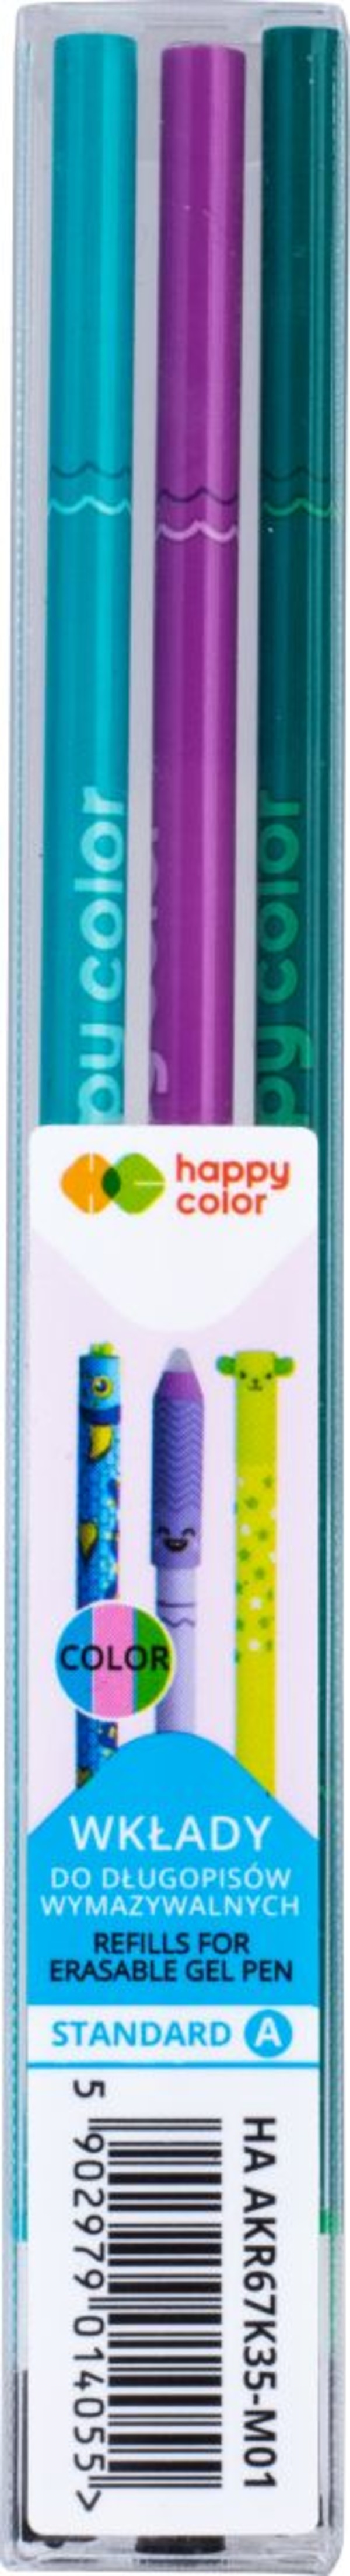 Wkłady do długopisu wymazywalnego standard a 0.5 mm mix happy color 3szt.